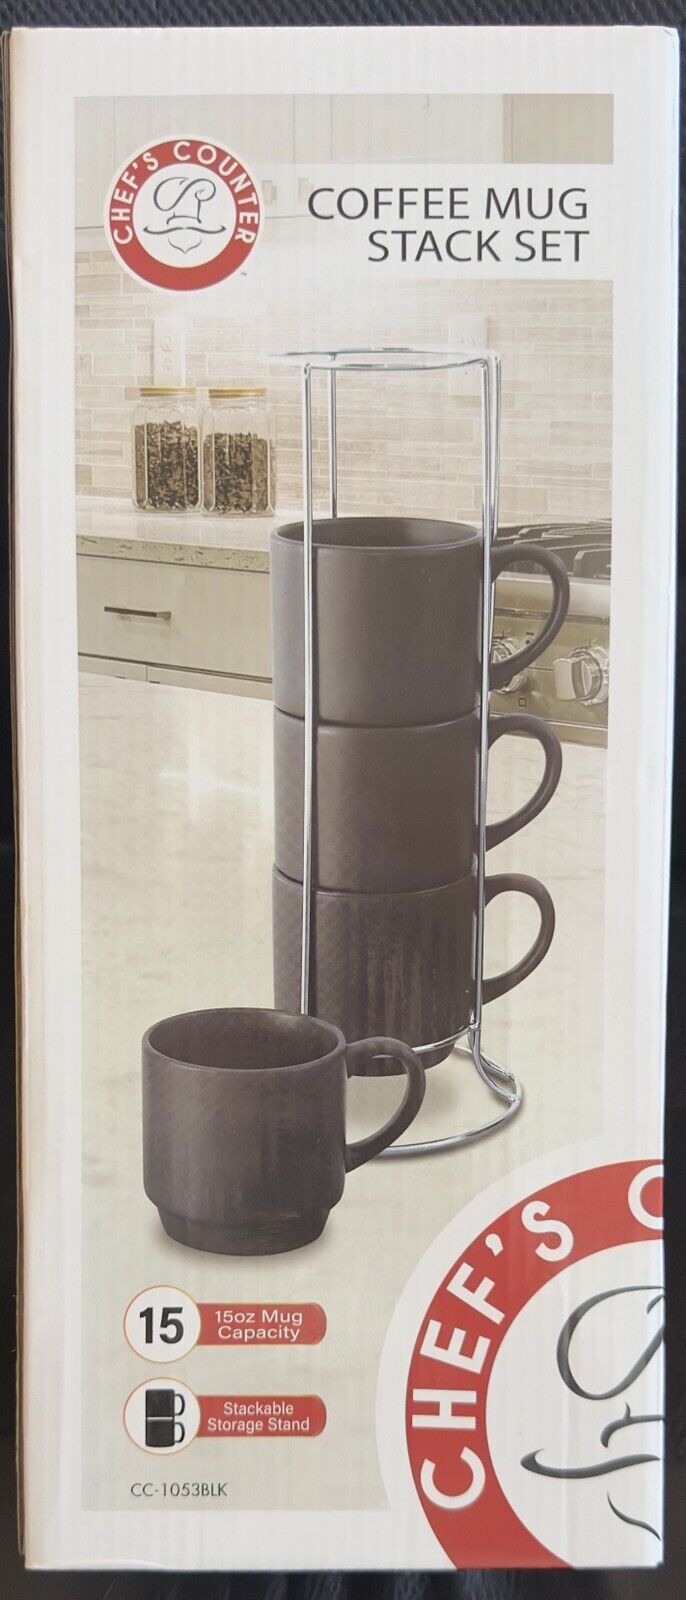 Chef’s Counter Coffee Mug Stack Set